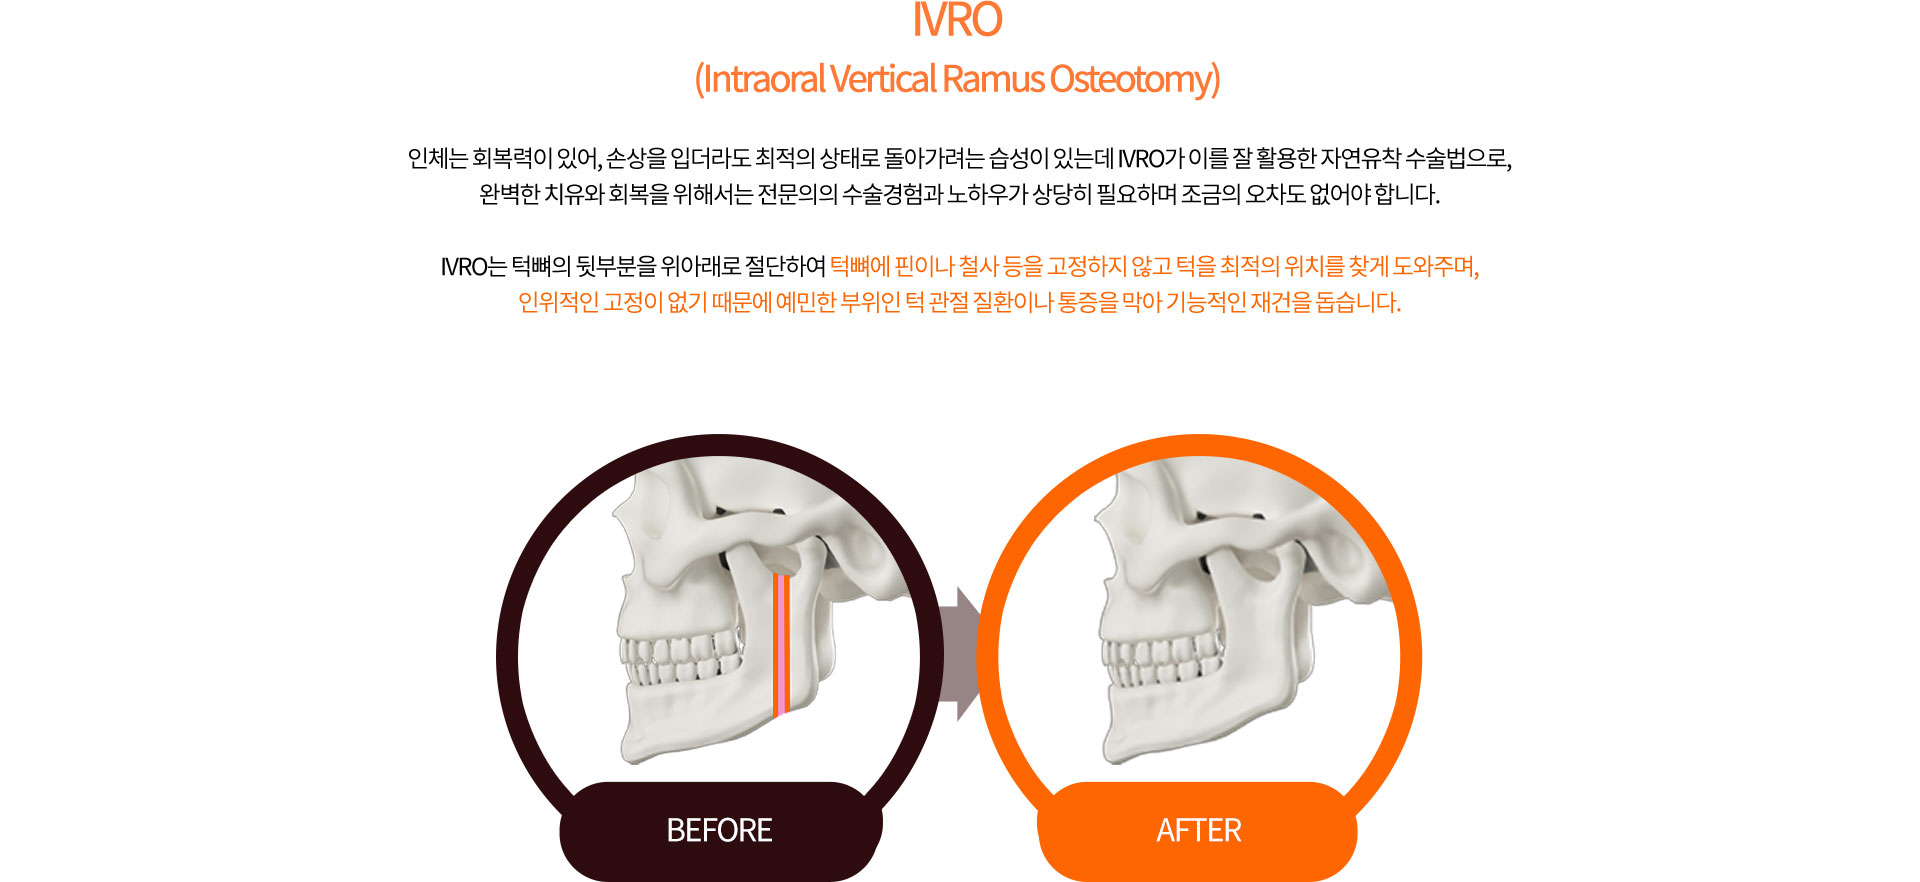 IVRO (Intraoral Vertical Ramus Osteotomy)
		인체는 회복력이 있어, 손상을 입더라도 최적의 상태로 돌아가려는 습성이 있는데 IVRO가 이를 잘 활용한 자연유착 수술법으로,
		완벽한 치유와 회복을 위해서는 전문의의 수술경험과 노하우가 상당히 필요하며 조금의 오차도 없어야 합니다.

		IVRO는 턱뼈의 뒷부분을 위아래로 절단하여 턱뼈에 핀이나 철사 등을 고정하지 않고 턱을 최적의 위치를 찾게 도와주며,
		인위적인 고정이 없기 때문에 예민한 부위인 턱 관절 질환이나 통증을 막아 기능적인 재건을 돕습니다.
		